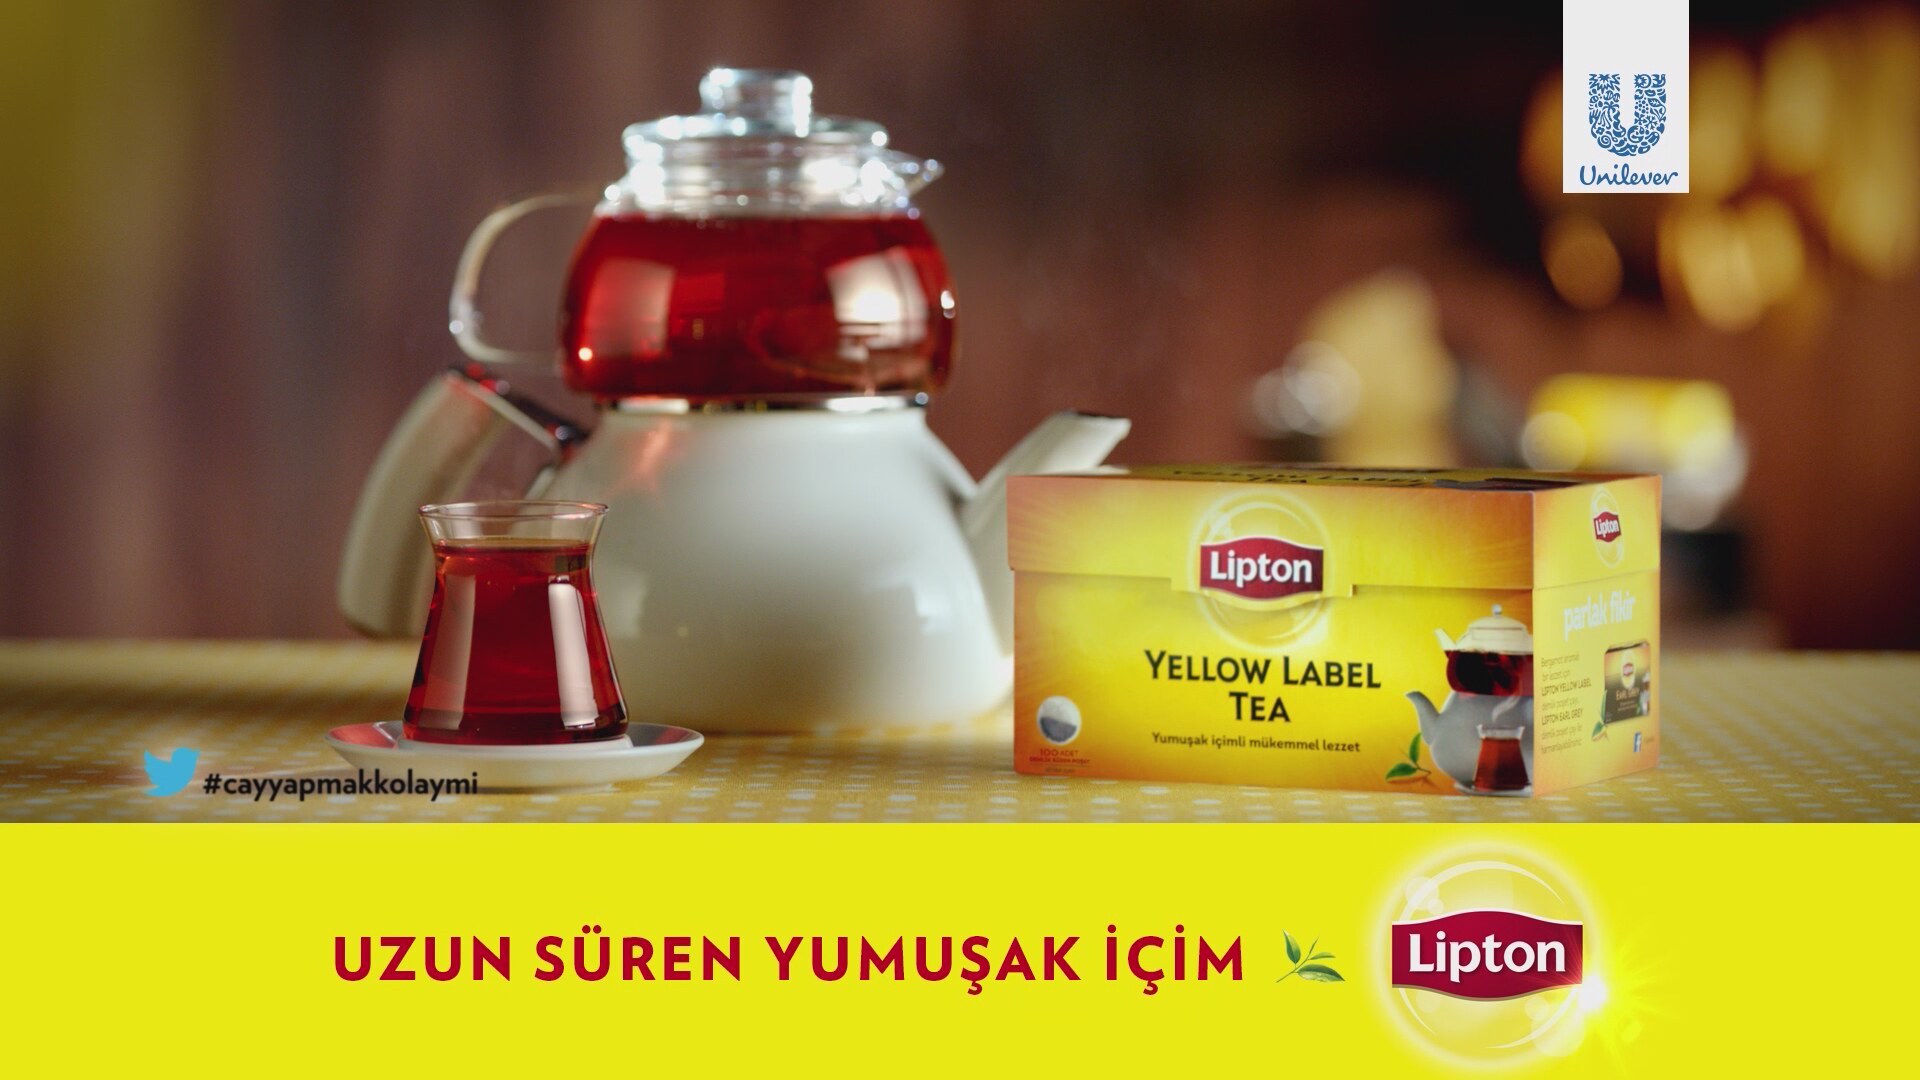 Пока чай стынет двое играли. Lipton. Реклама чая Липтон. Чайник из рекламы Липтон. Липтон в бутылке.